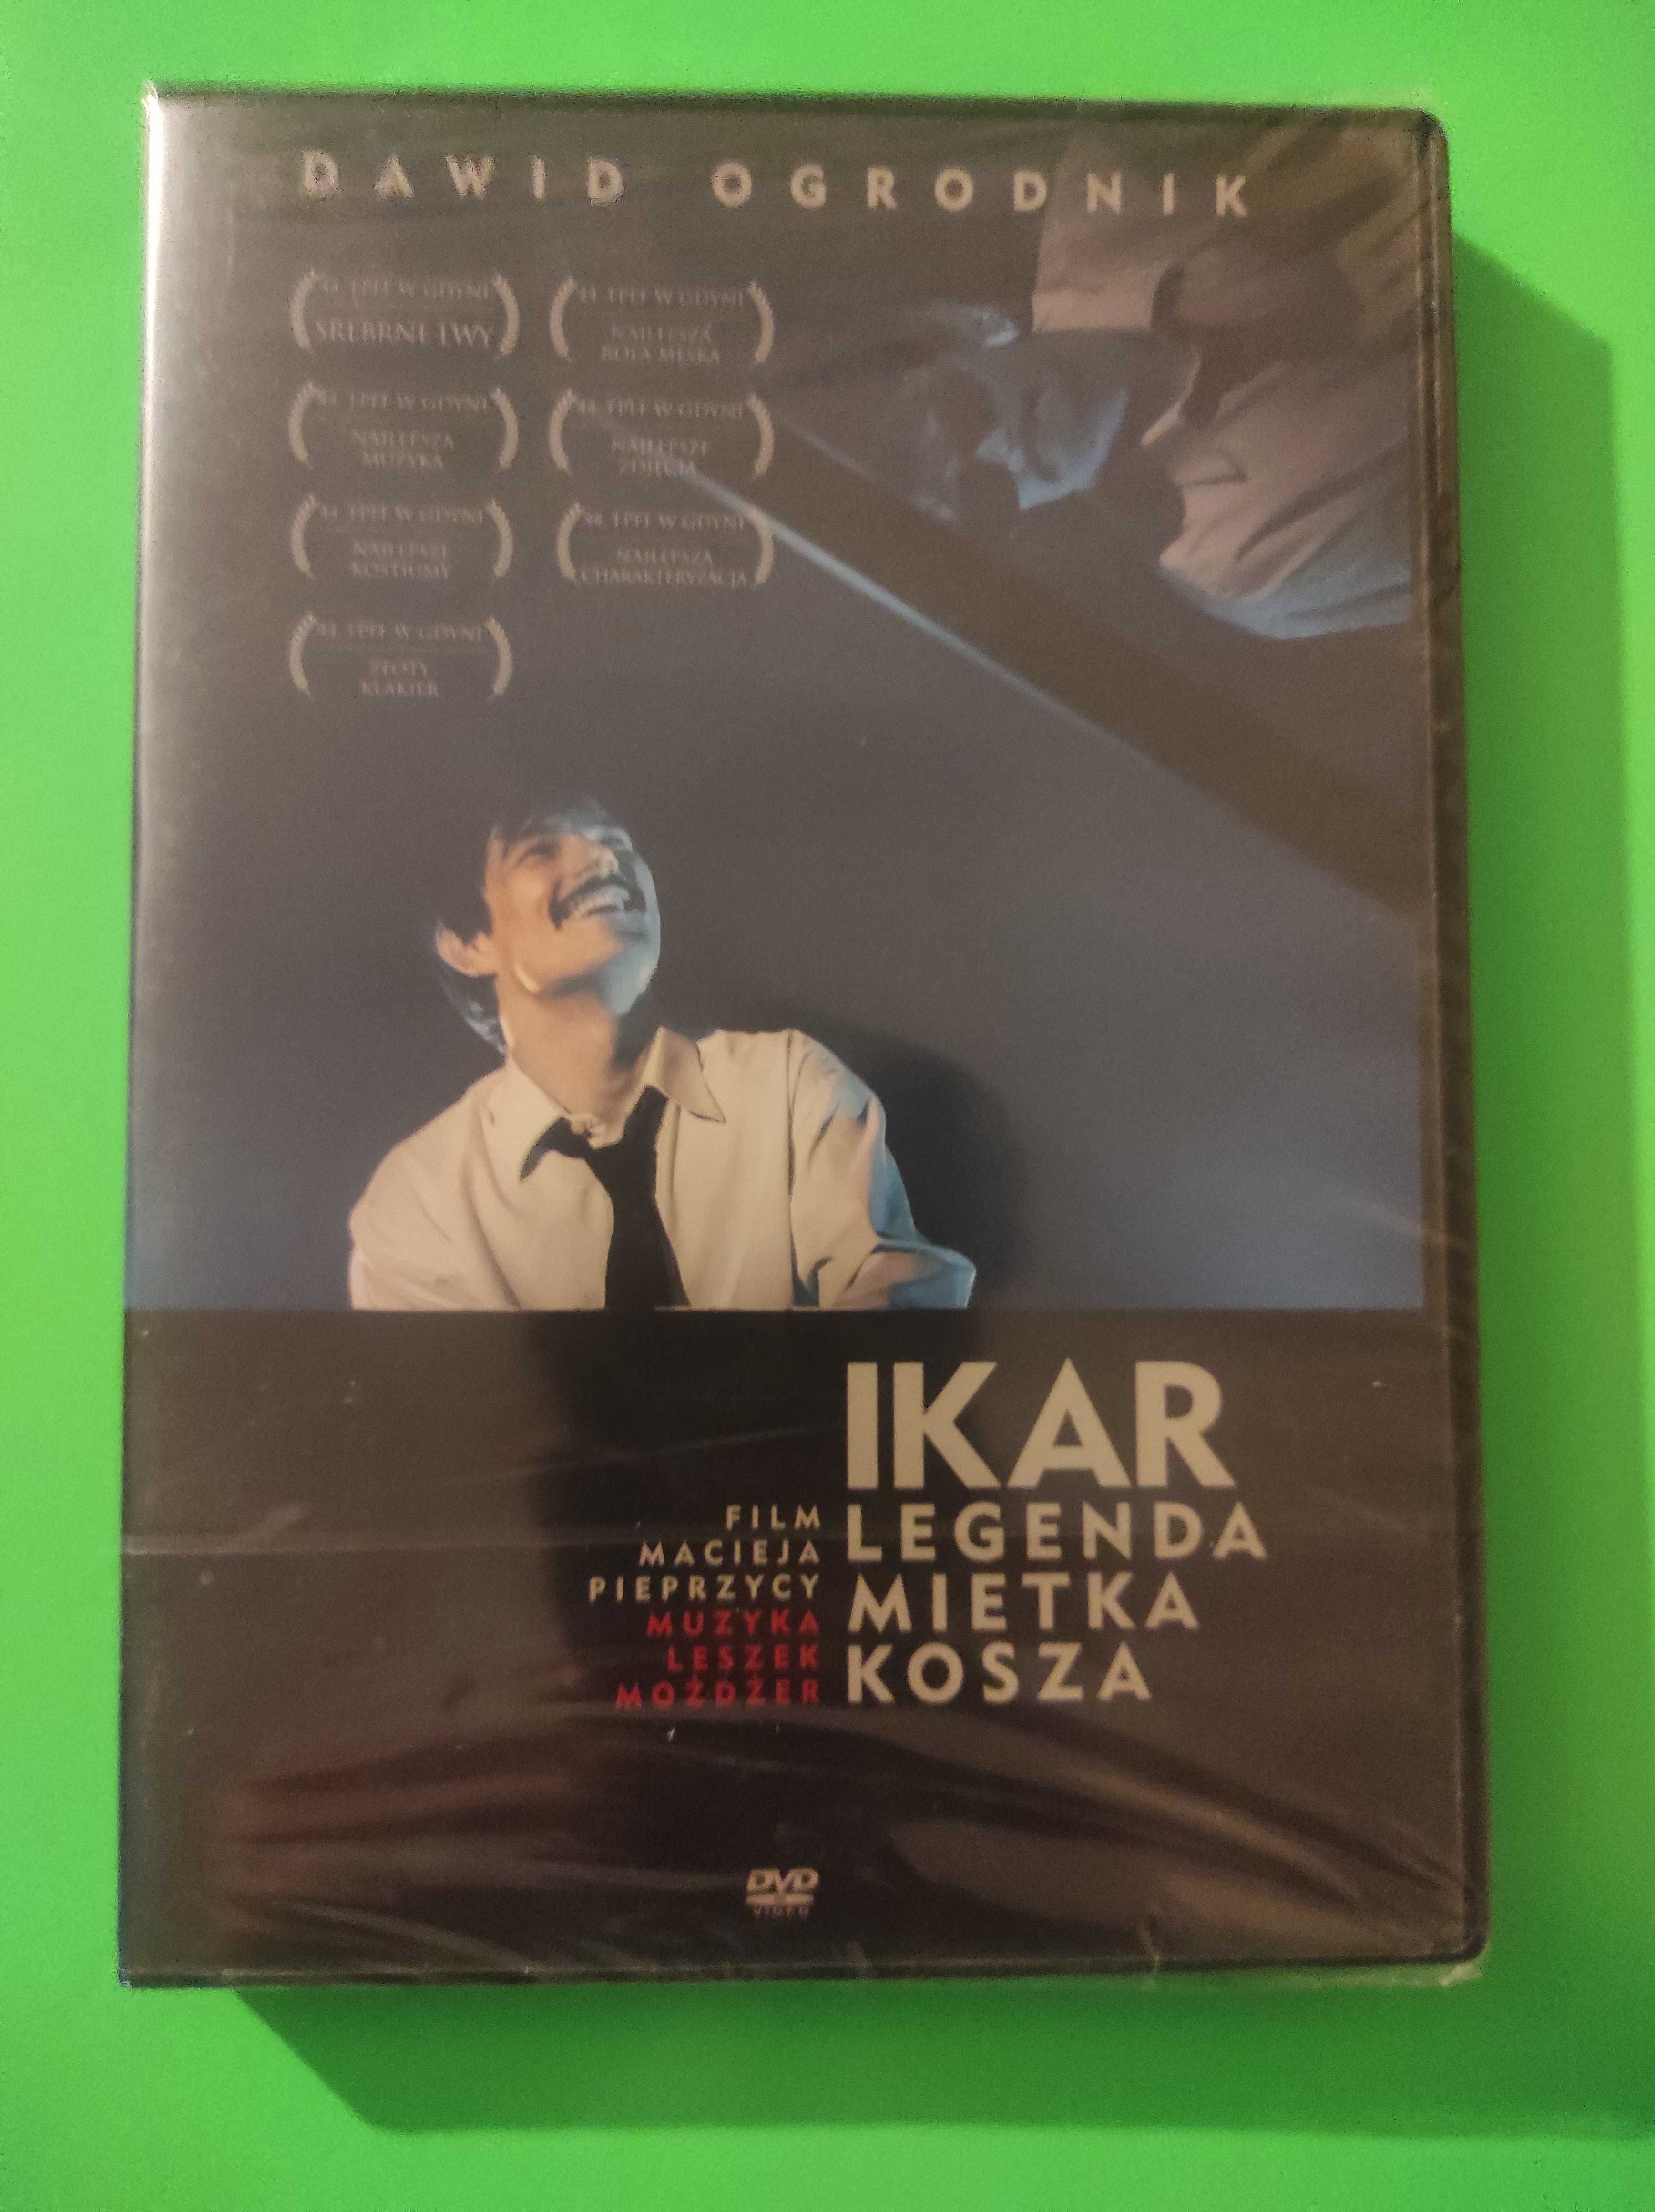 Film "Ikar Legenda Mietka Kosza" płyta DVD, nowy zafoliowany